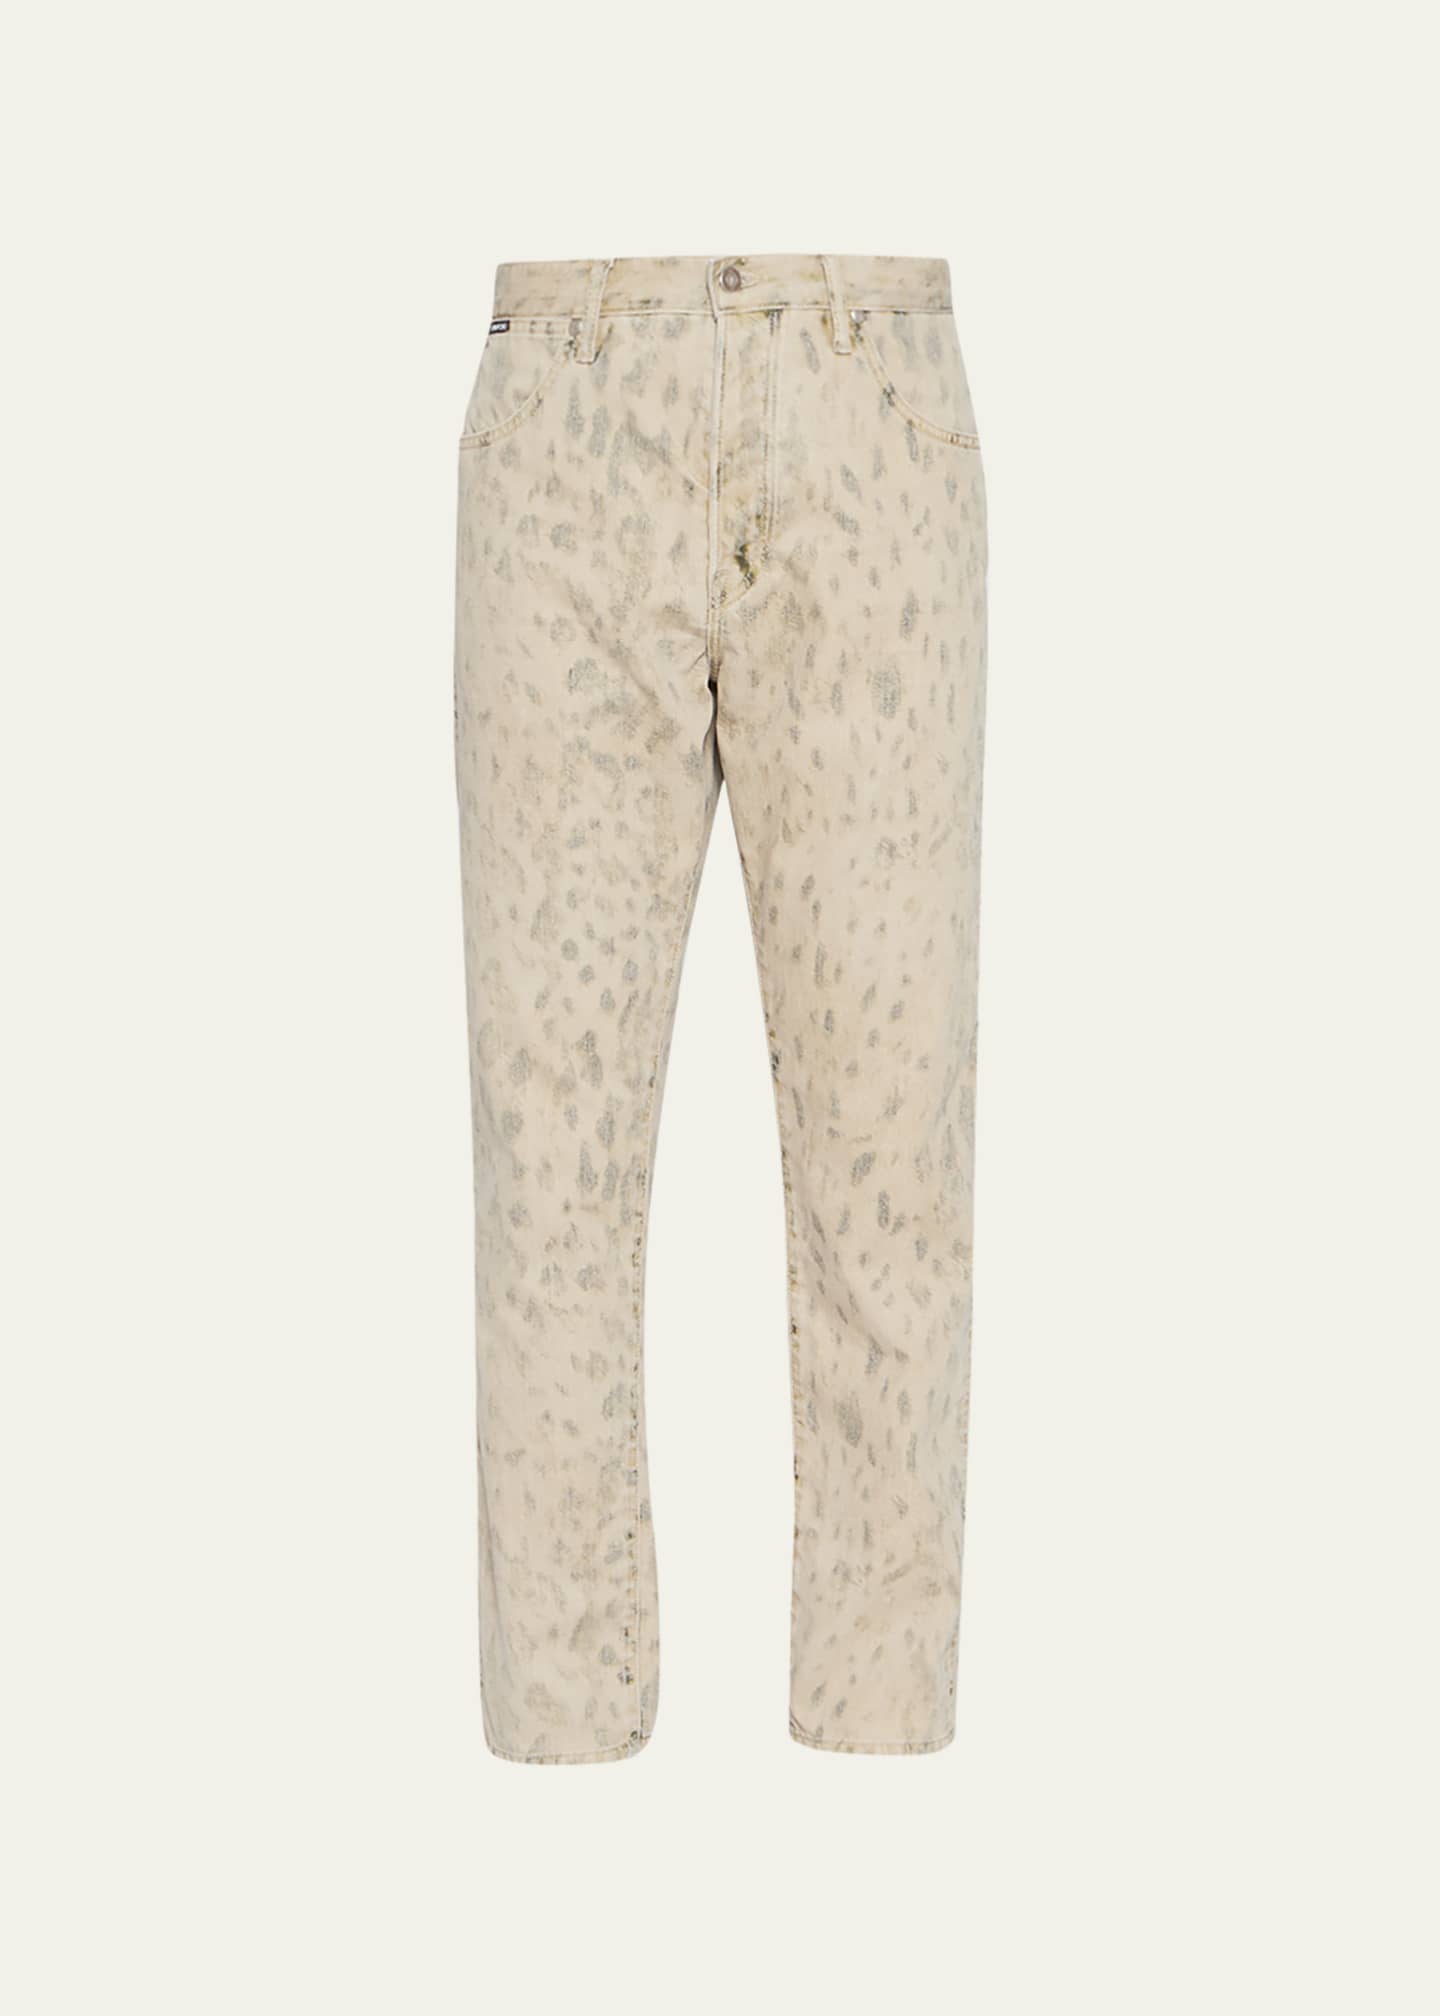 TOM FORD Men's Washed Leopard Denim Jeans - Bergdorf Goodman